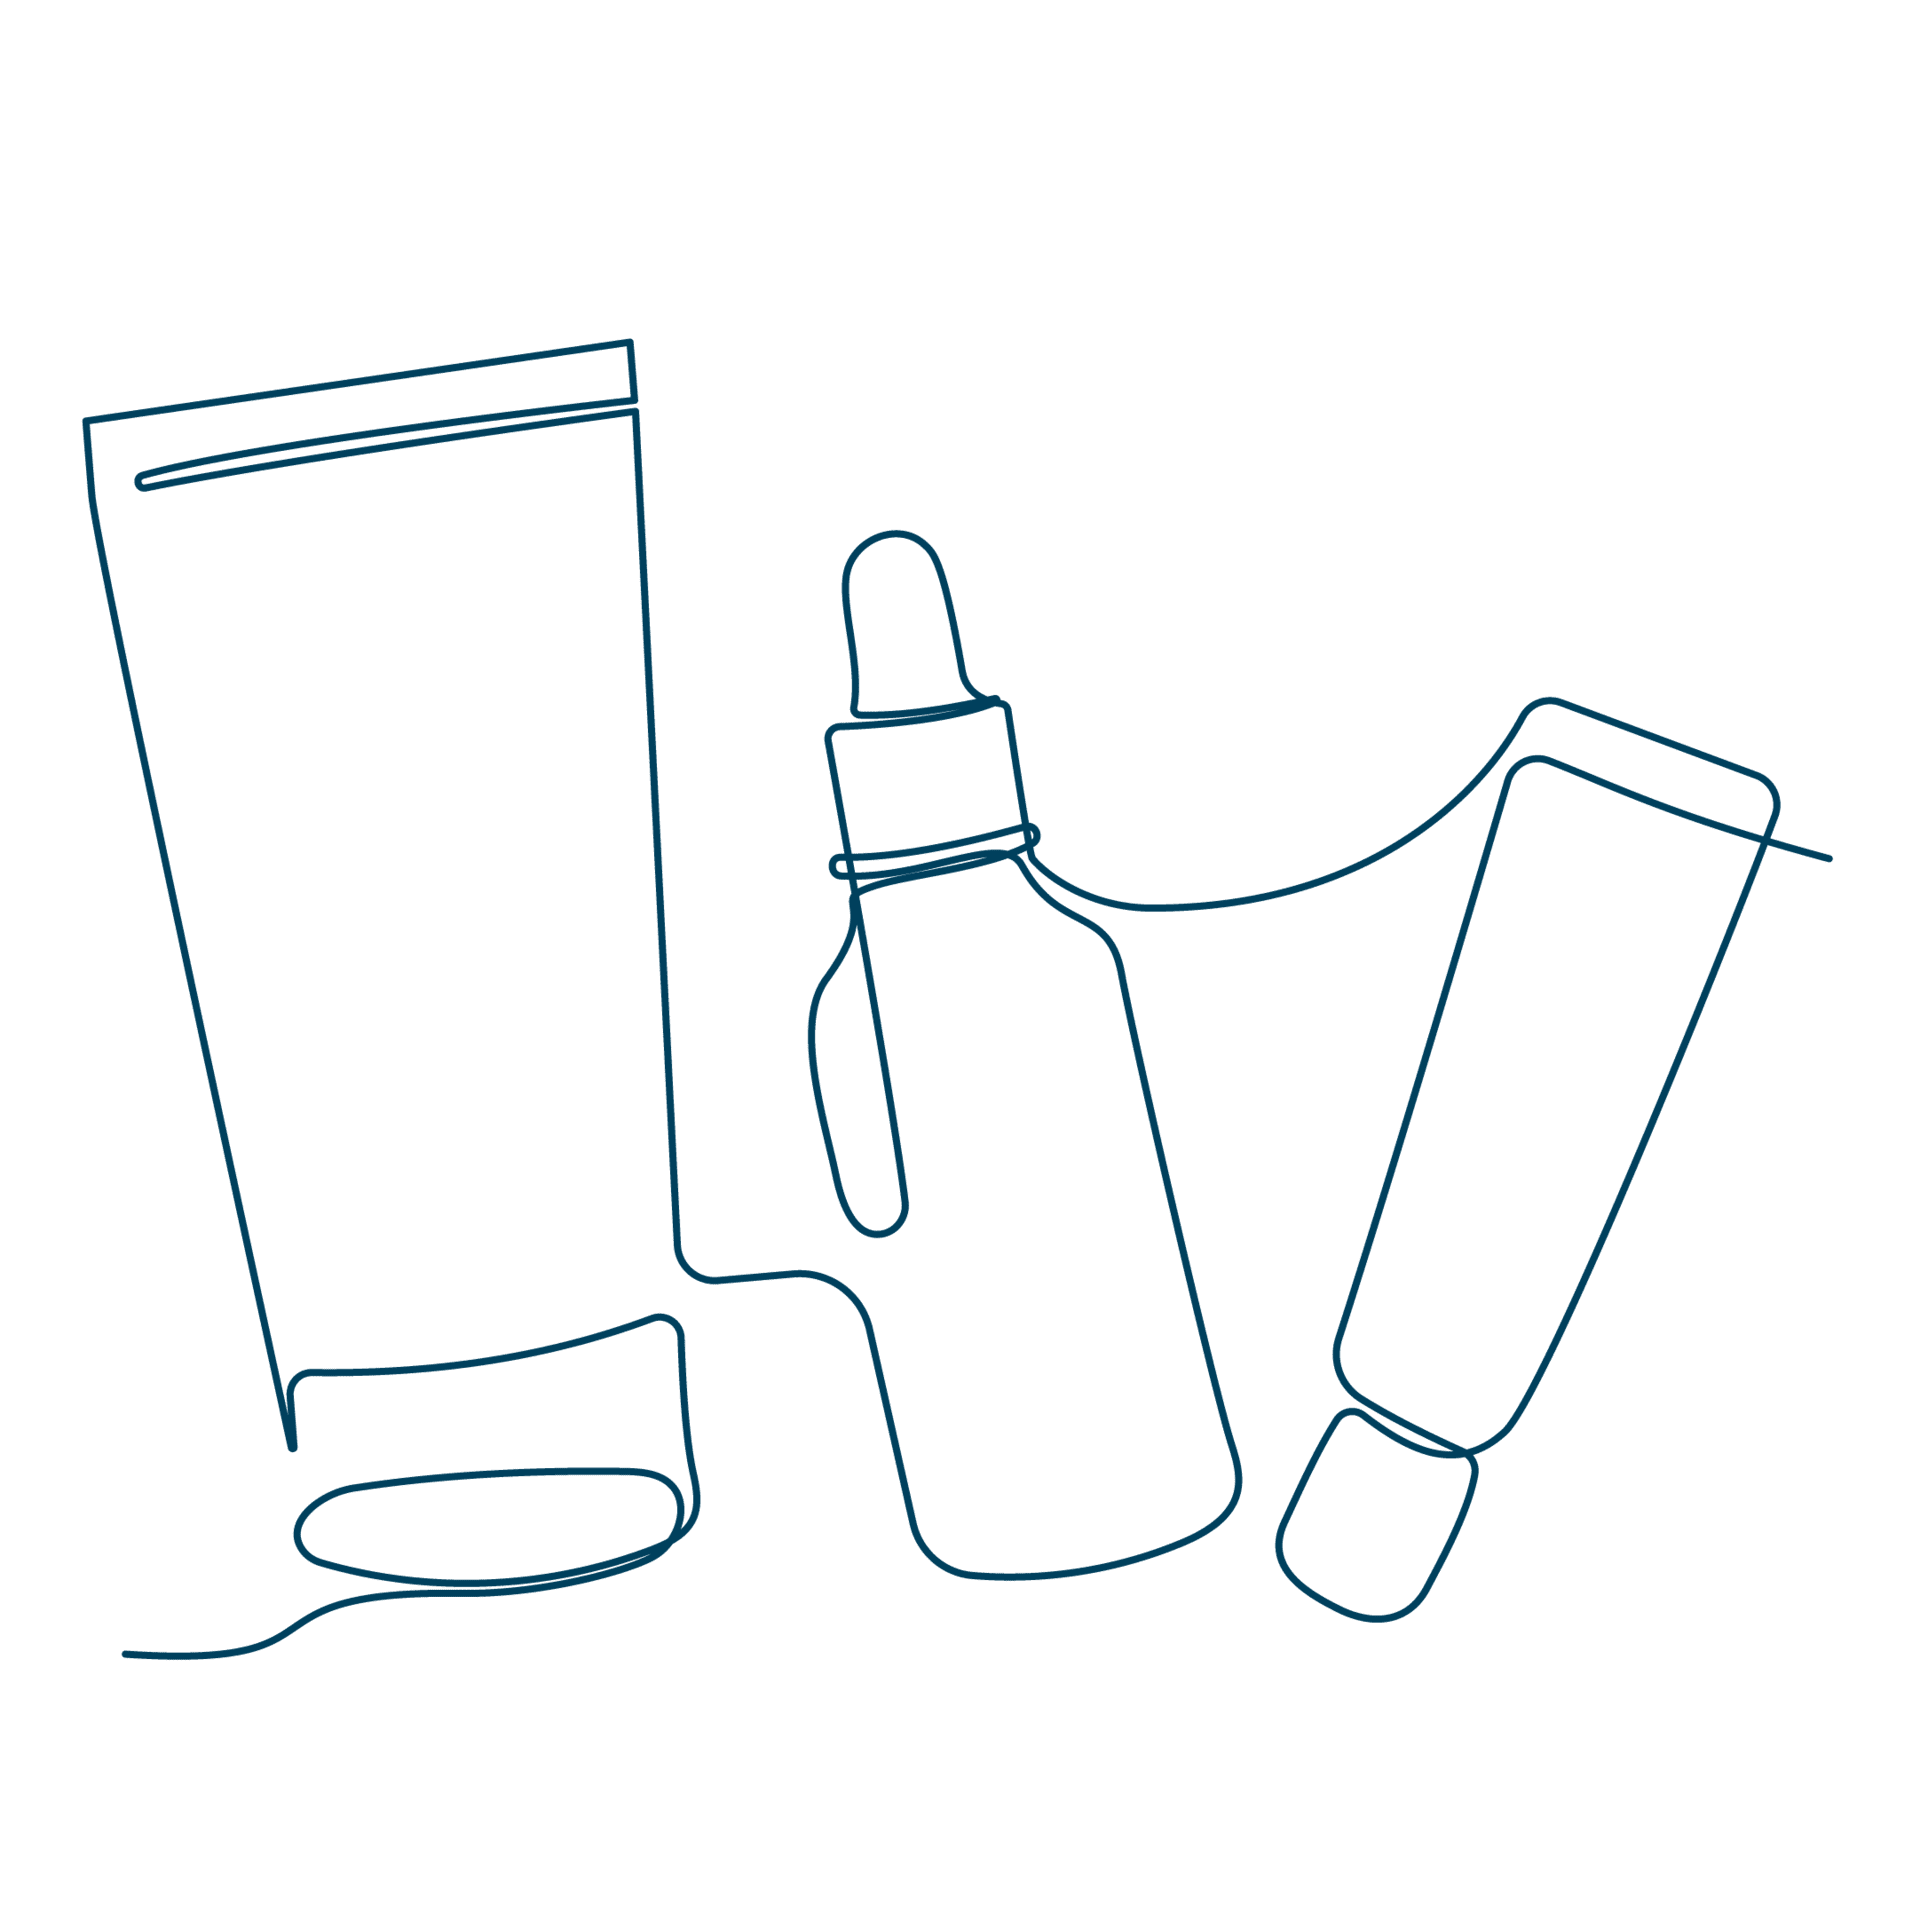 Diese Line-Art-Zeichnung diverser Tuben und Flaschen steht für das breite Sixtus-Portfolio zur Haut- und Fußpflege.